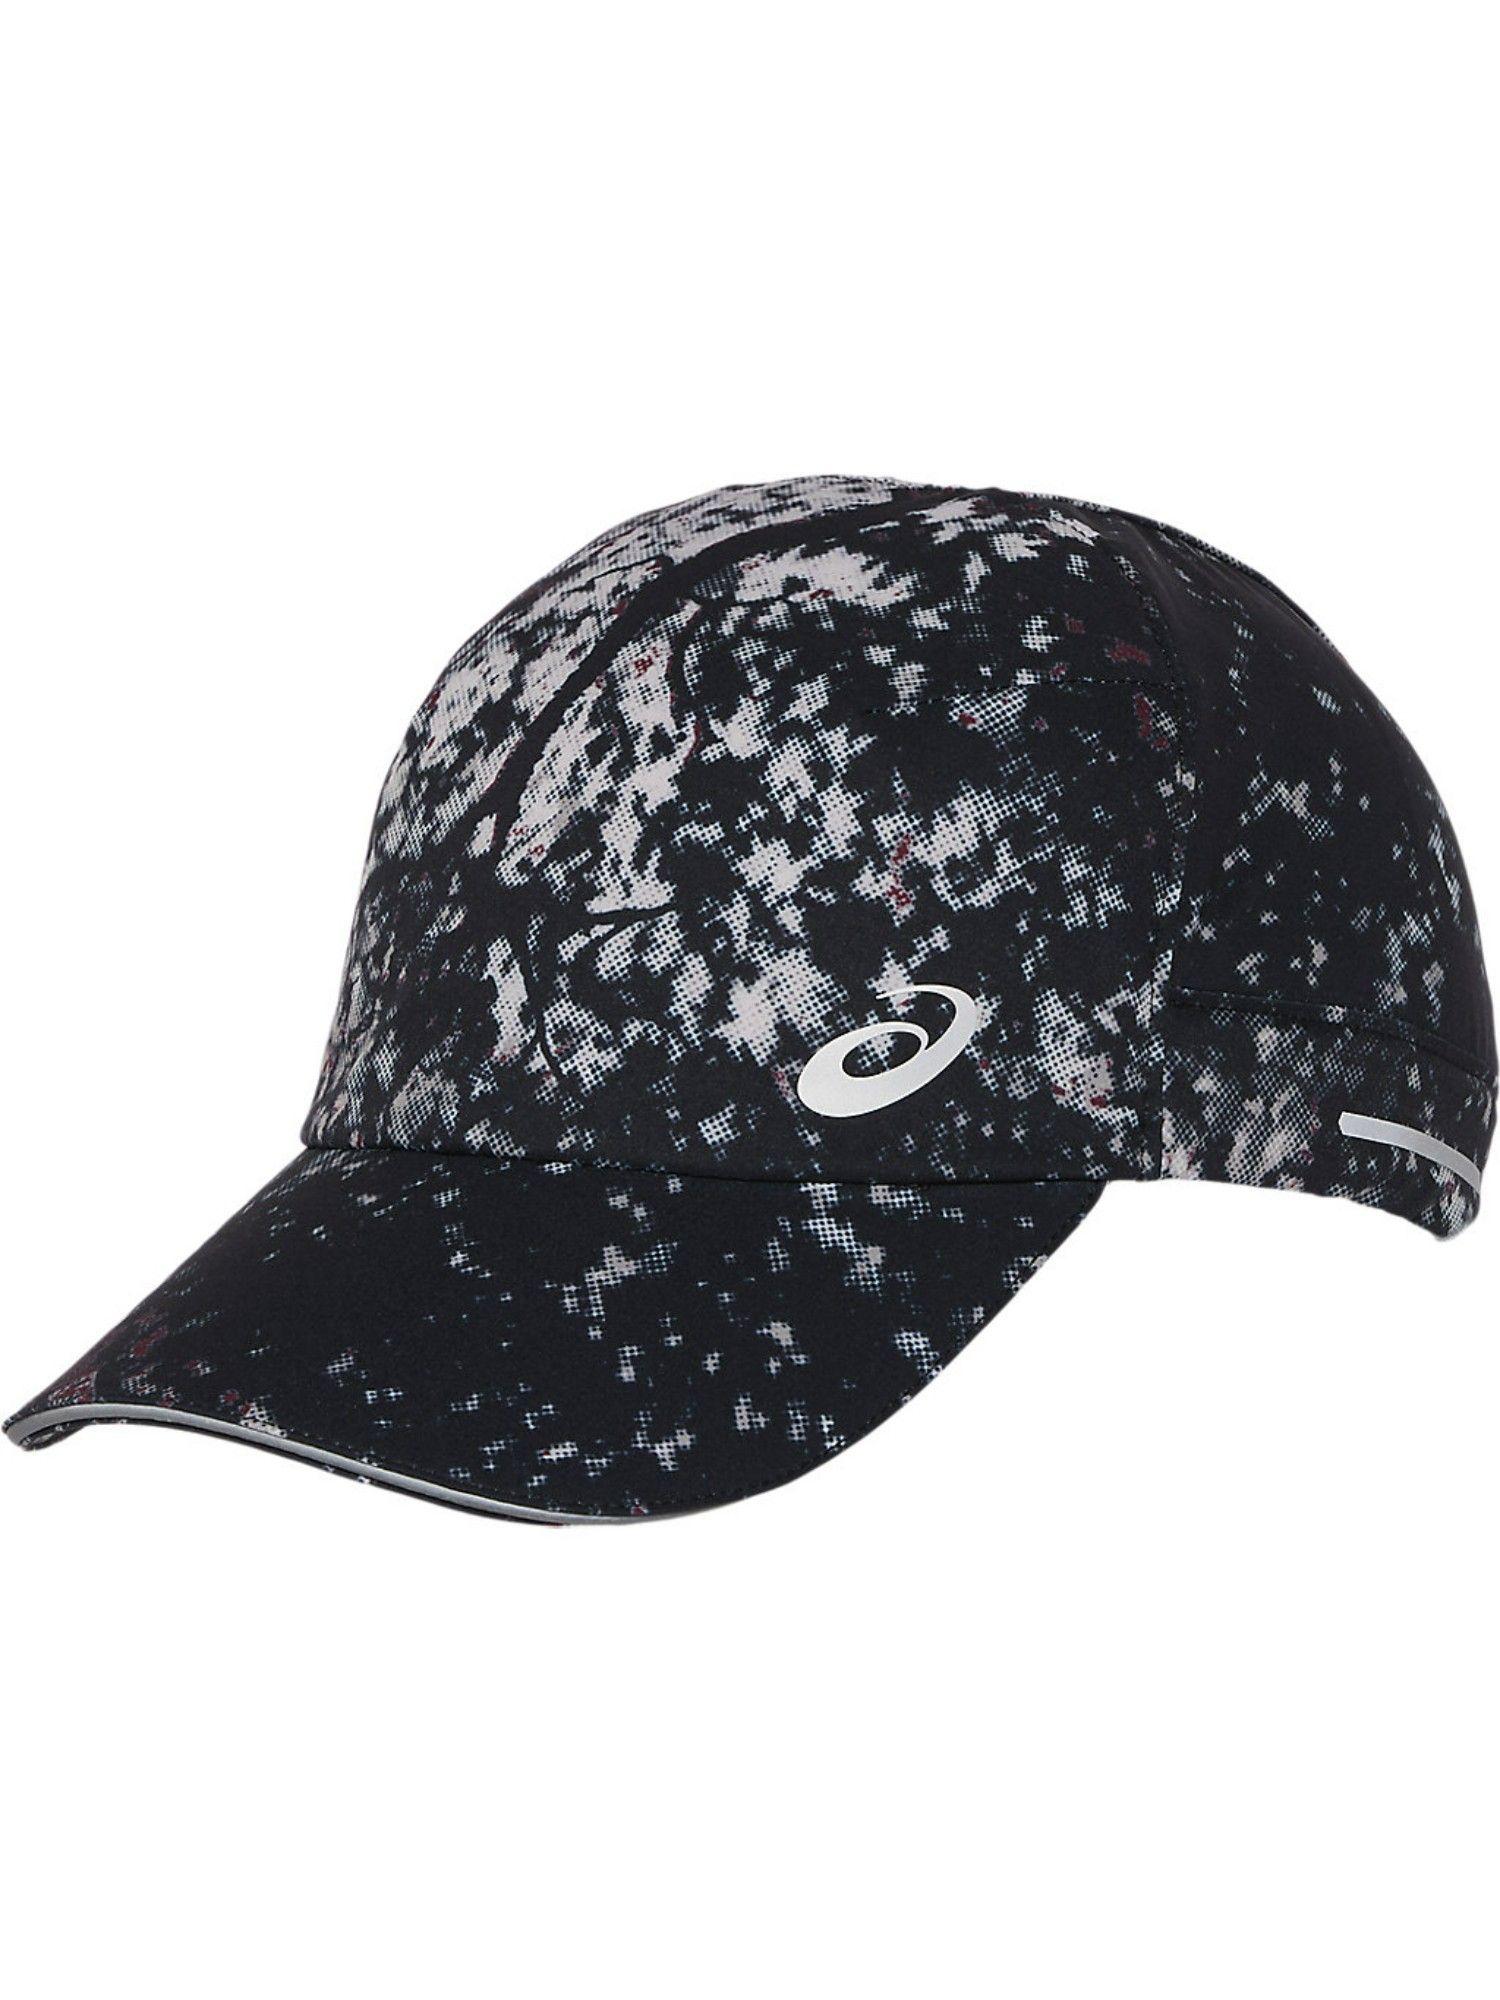 graphic woven black unisex cap